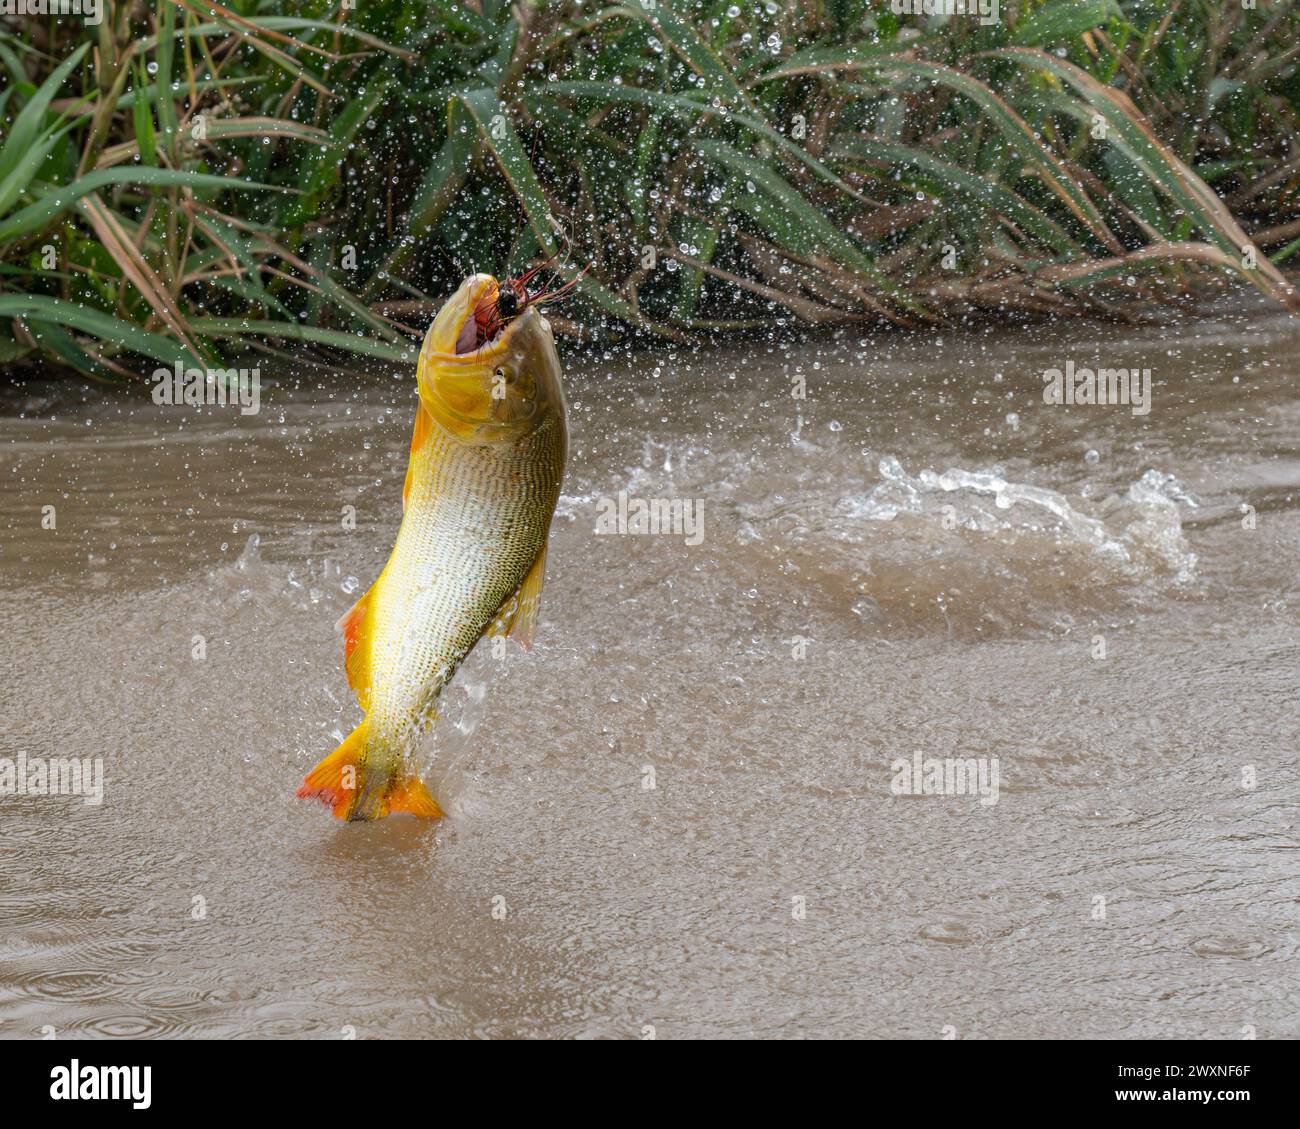 Ein goldener dorado-Fisch, der in einem Fluss in Argentinien Fischköder fängt Stockfoto